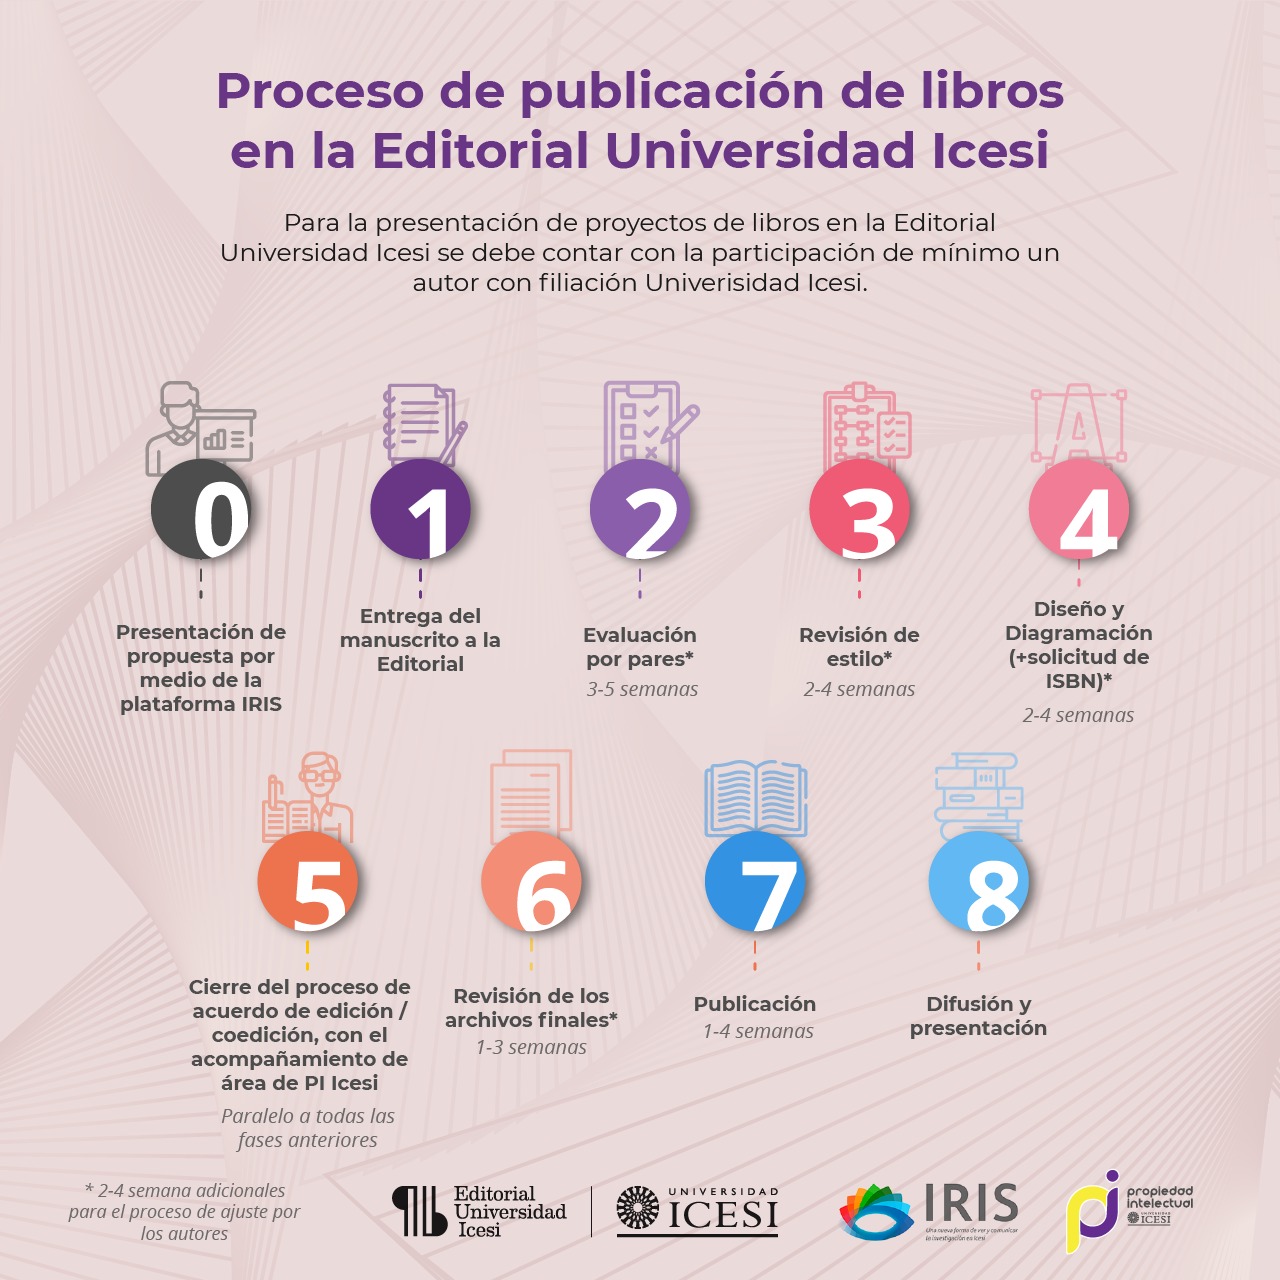 Proceso de publicación de libros en la Universidad Editorial Icesi